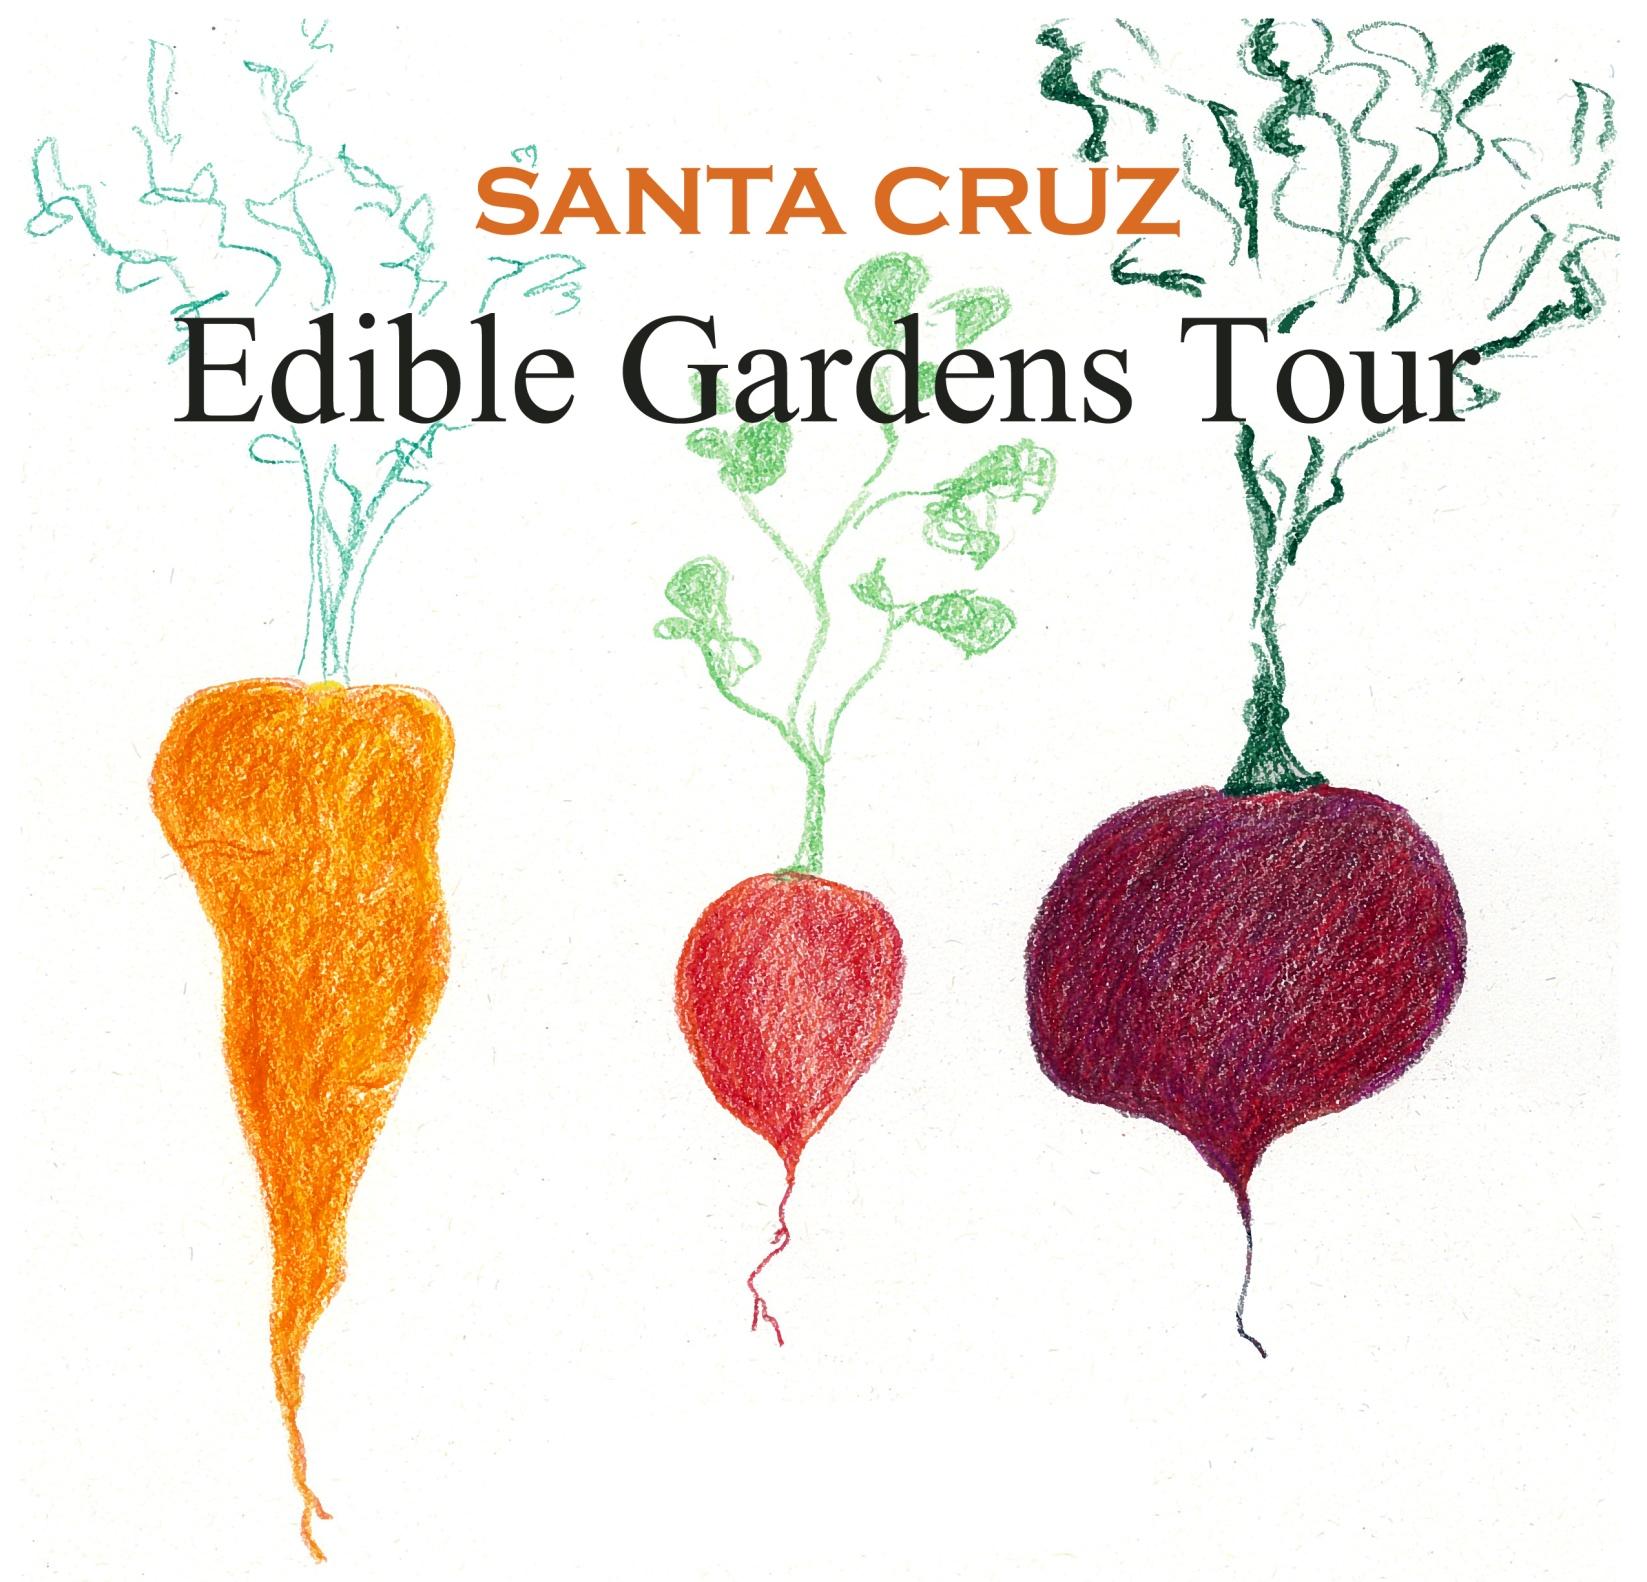 Santa Cruz Edible Gardens Tour